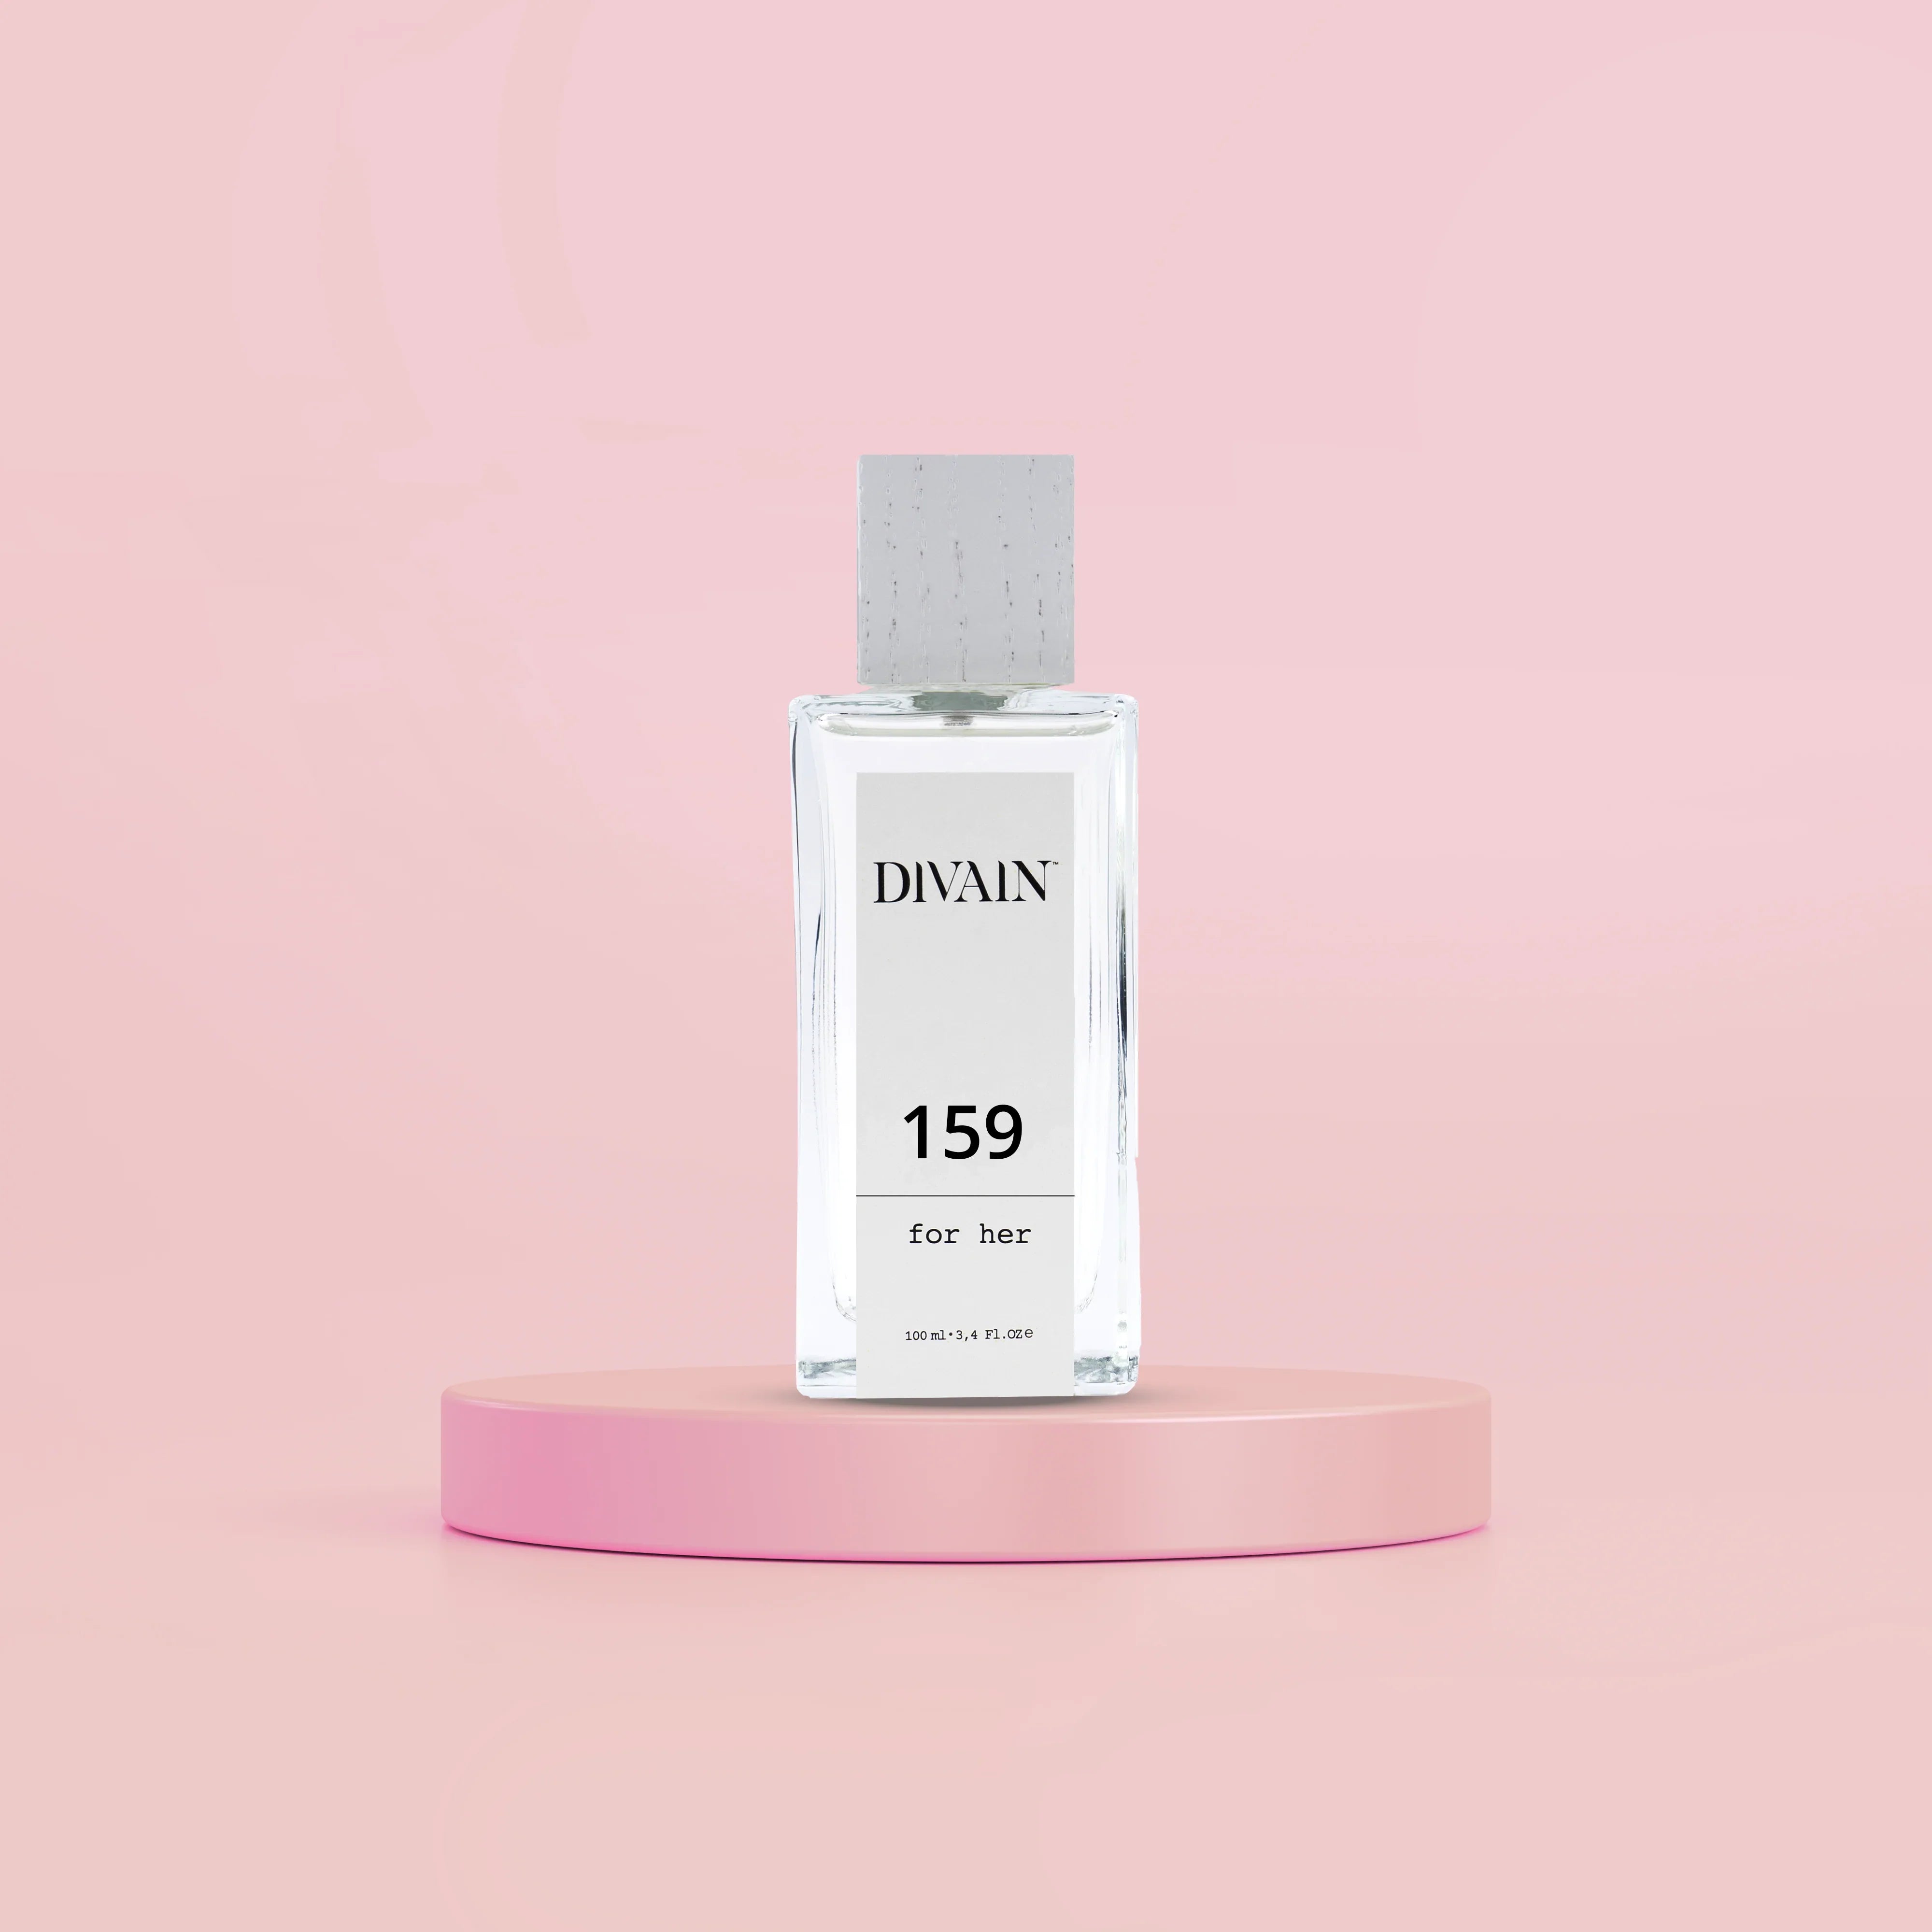 DIVAIN-159 | Similar a Acqua Di Gio de Armani | Mujer